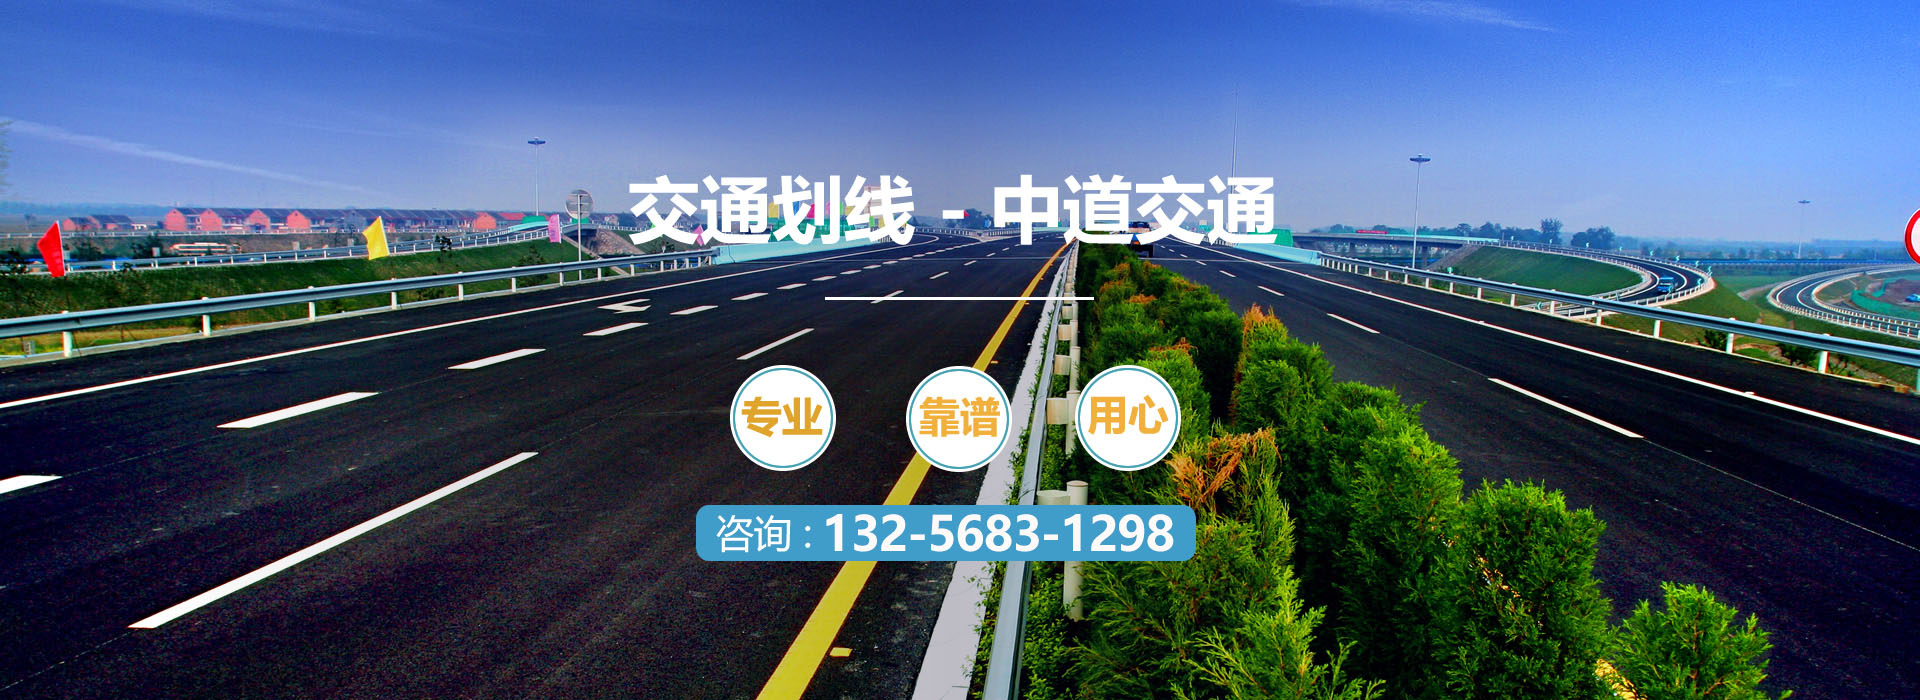 青島劃線(xiàn),青島標志牌,青島減速帶